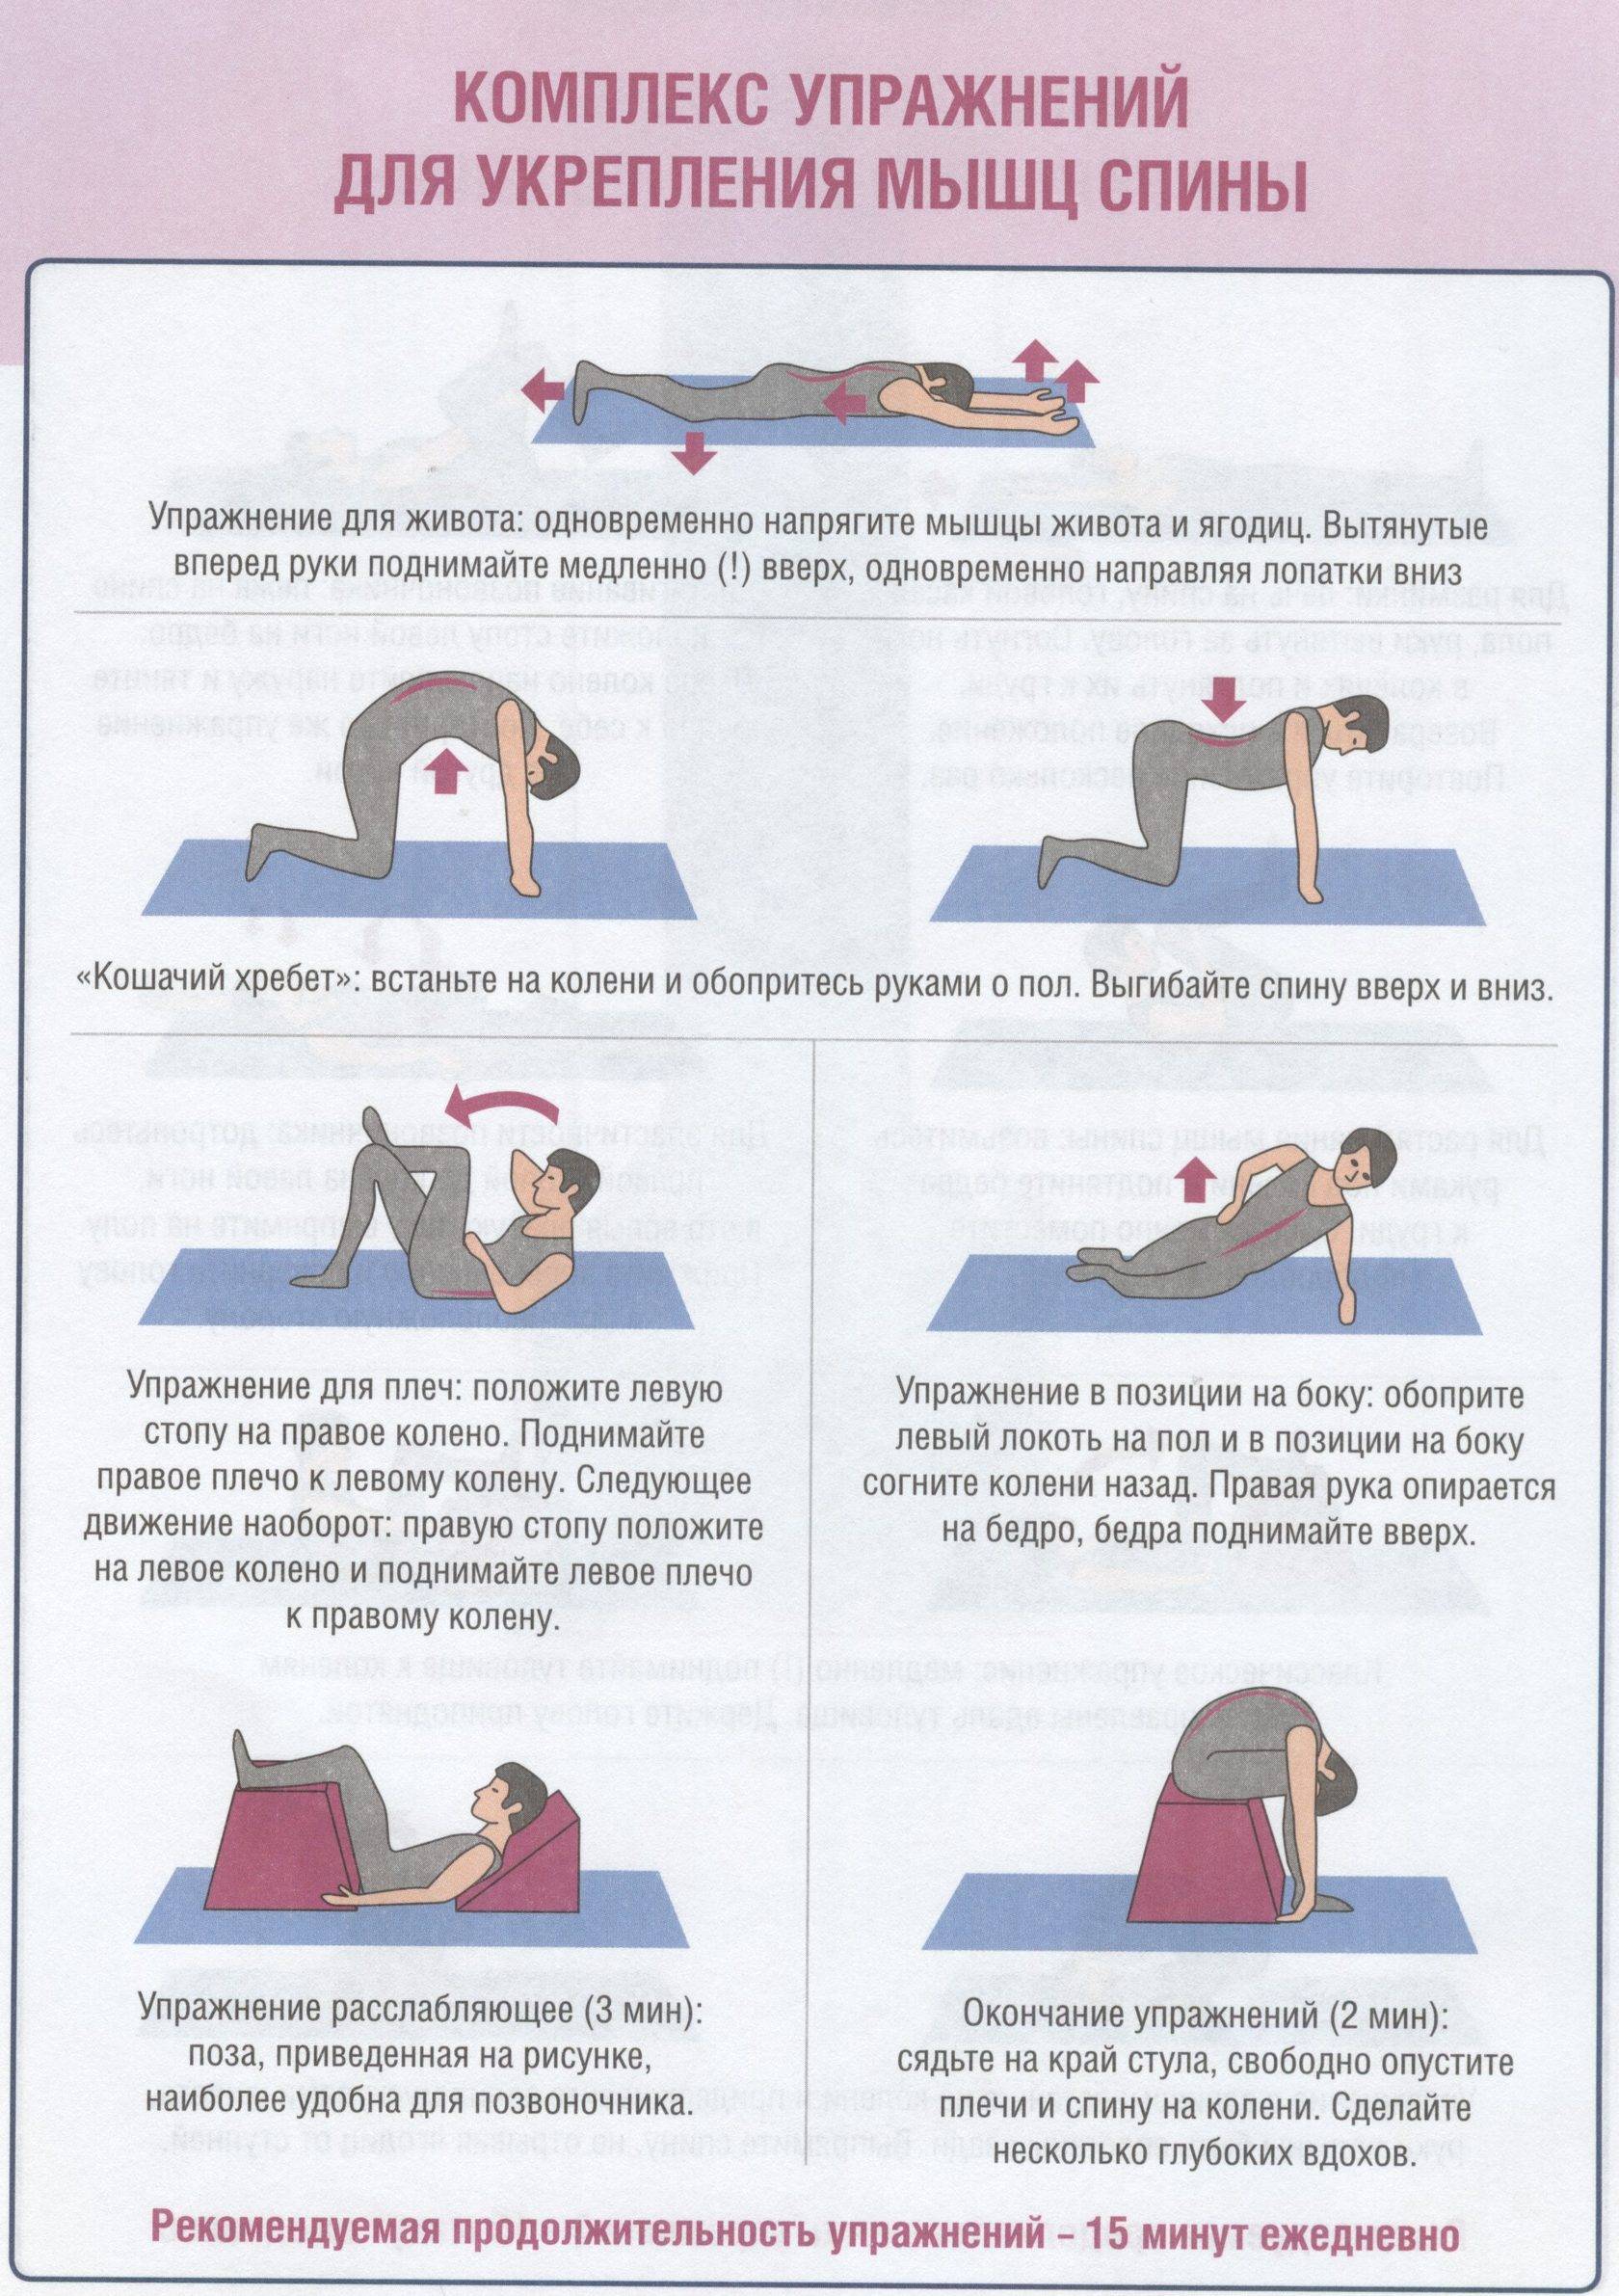 Укрепление поясницы. Гимнастика для укрепления мышц спины и позвоночника. Упражнения для спины для укрепления мышц спины. Комплекс упражнений для укрепления мышц спины с описанием. Комплекс упражнений для развития мышц спины 10 упражнений.